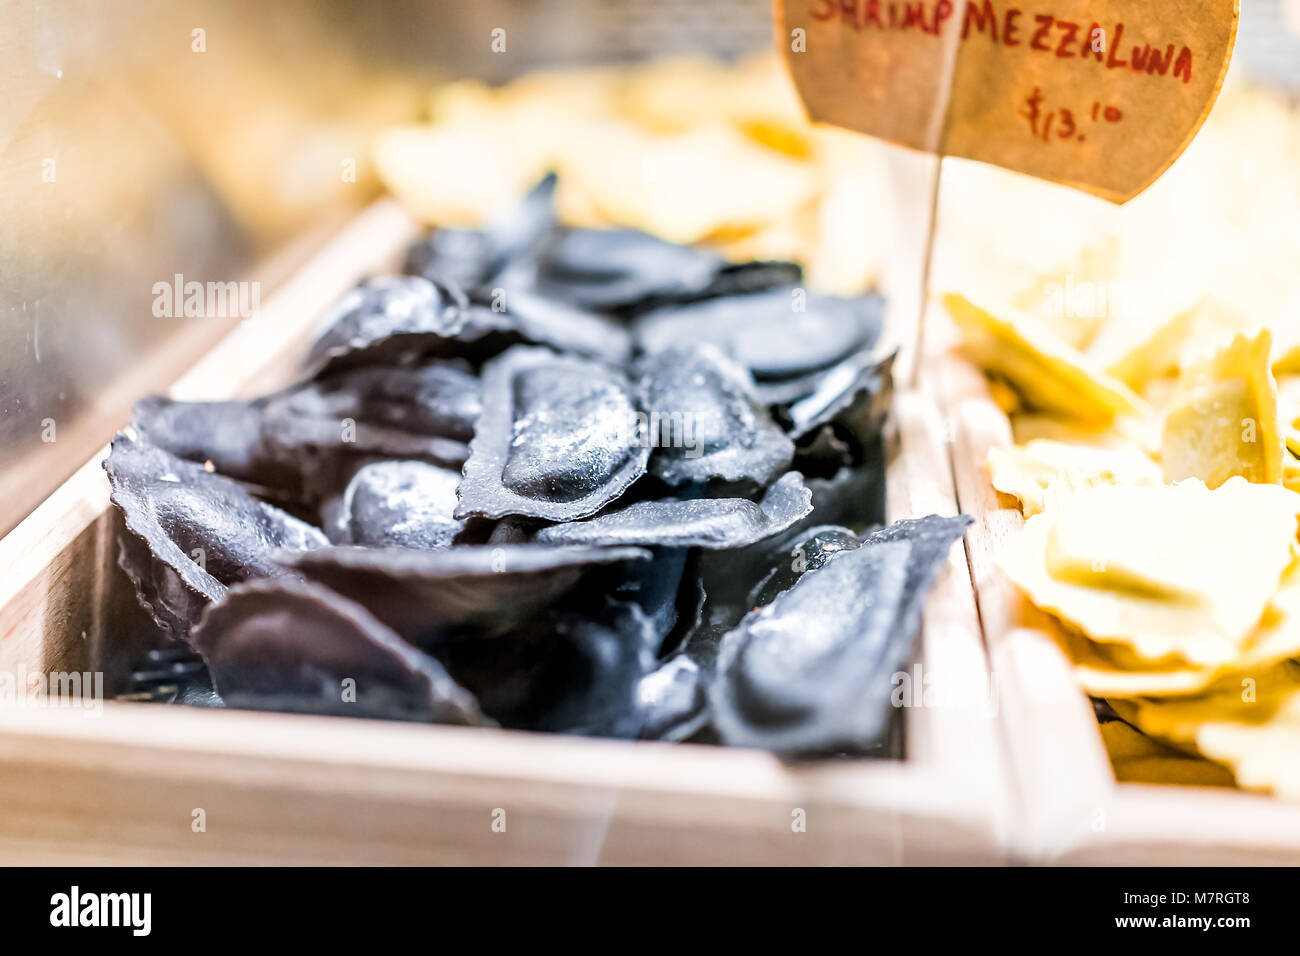 Noir de l'encre de seiche crevettes raviolis pâtes fraîches mezzaluna nouilles brutes charbon non cuites en italien marché gourmand Banque D'Images